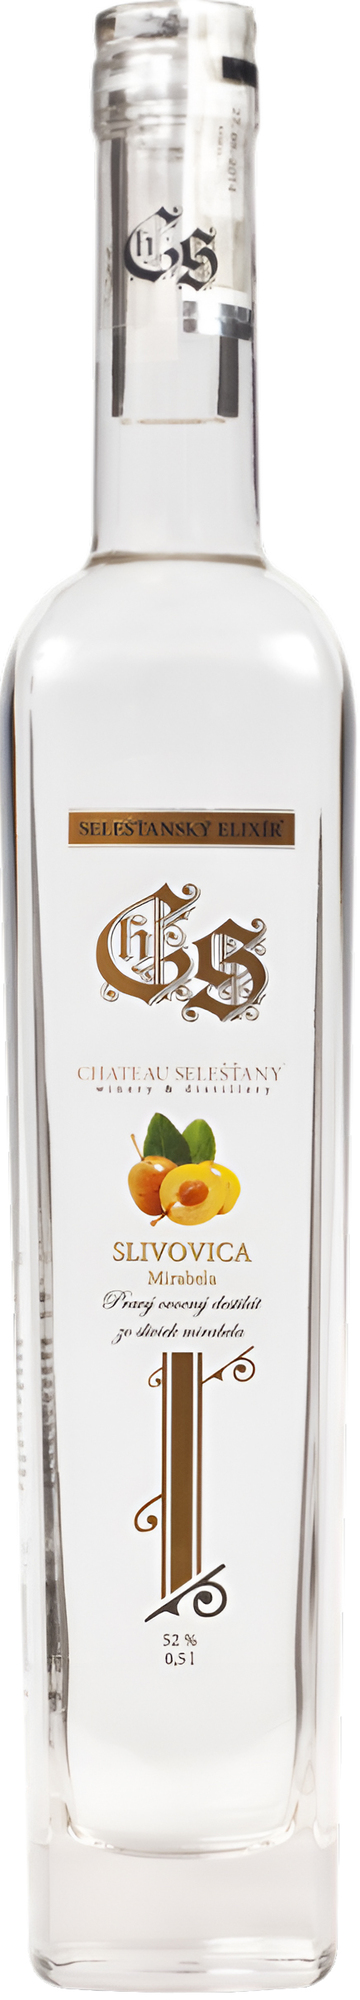 Chateau Selešťany Slivovica Mirabela 52% 0,5l (čistá fľaša)